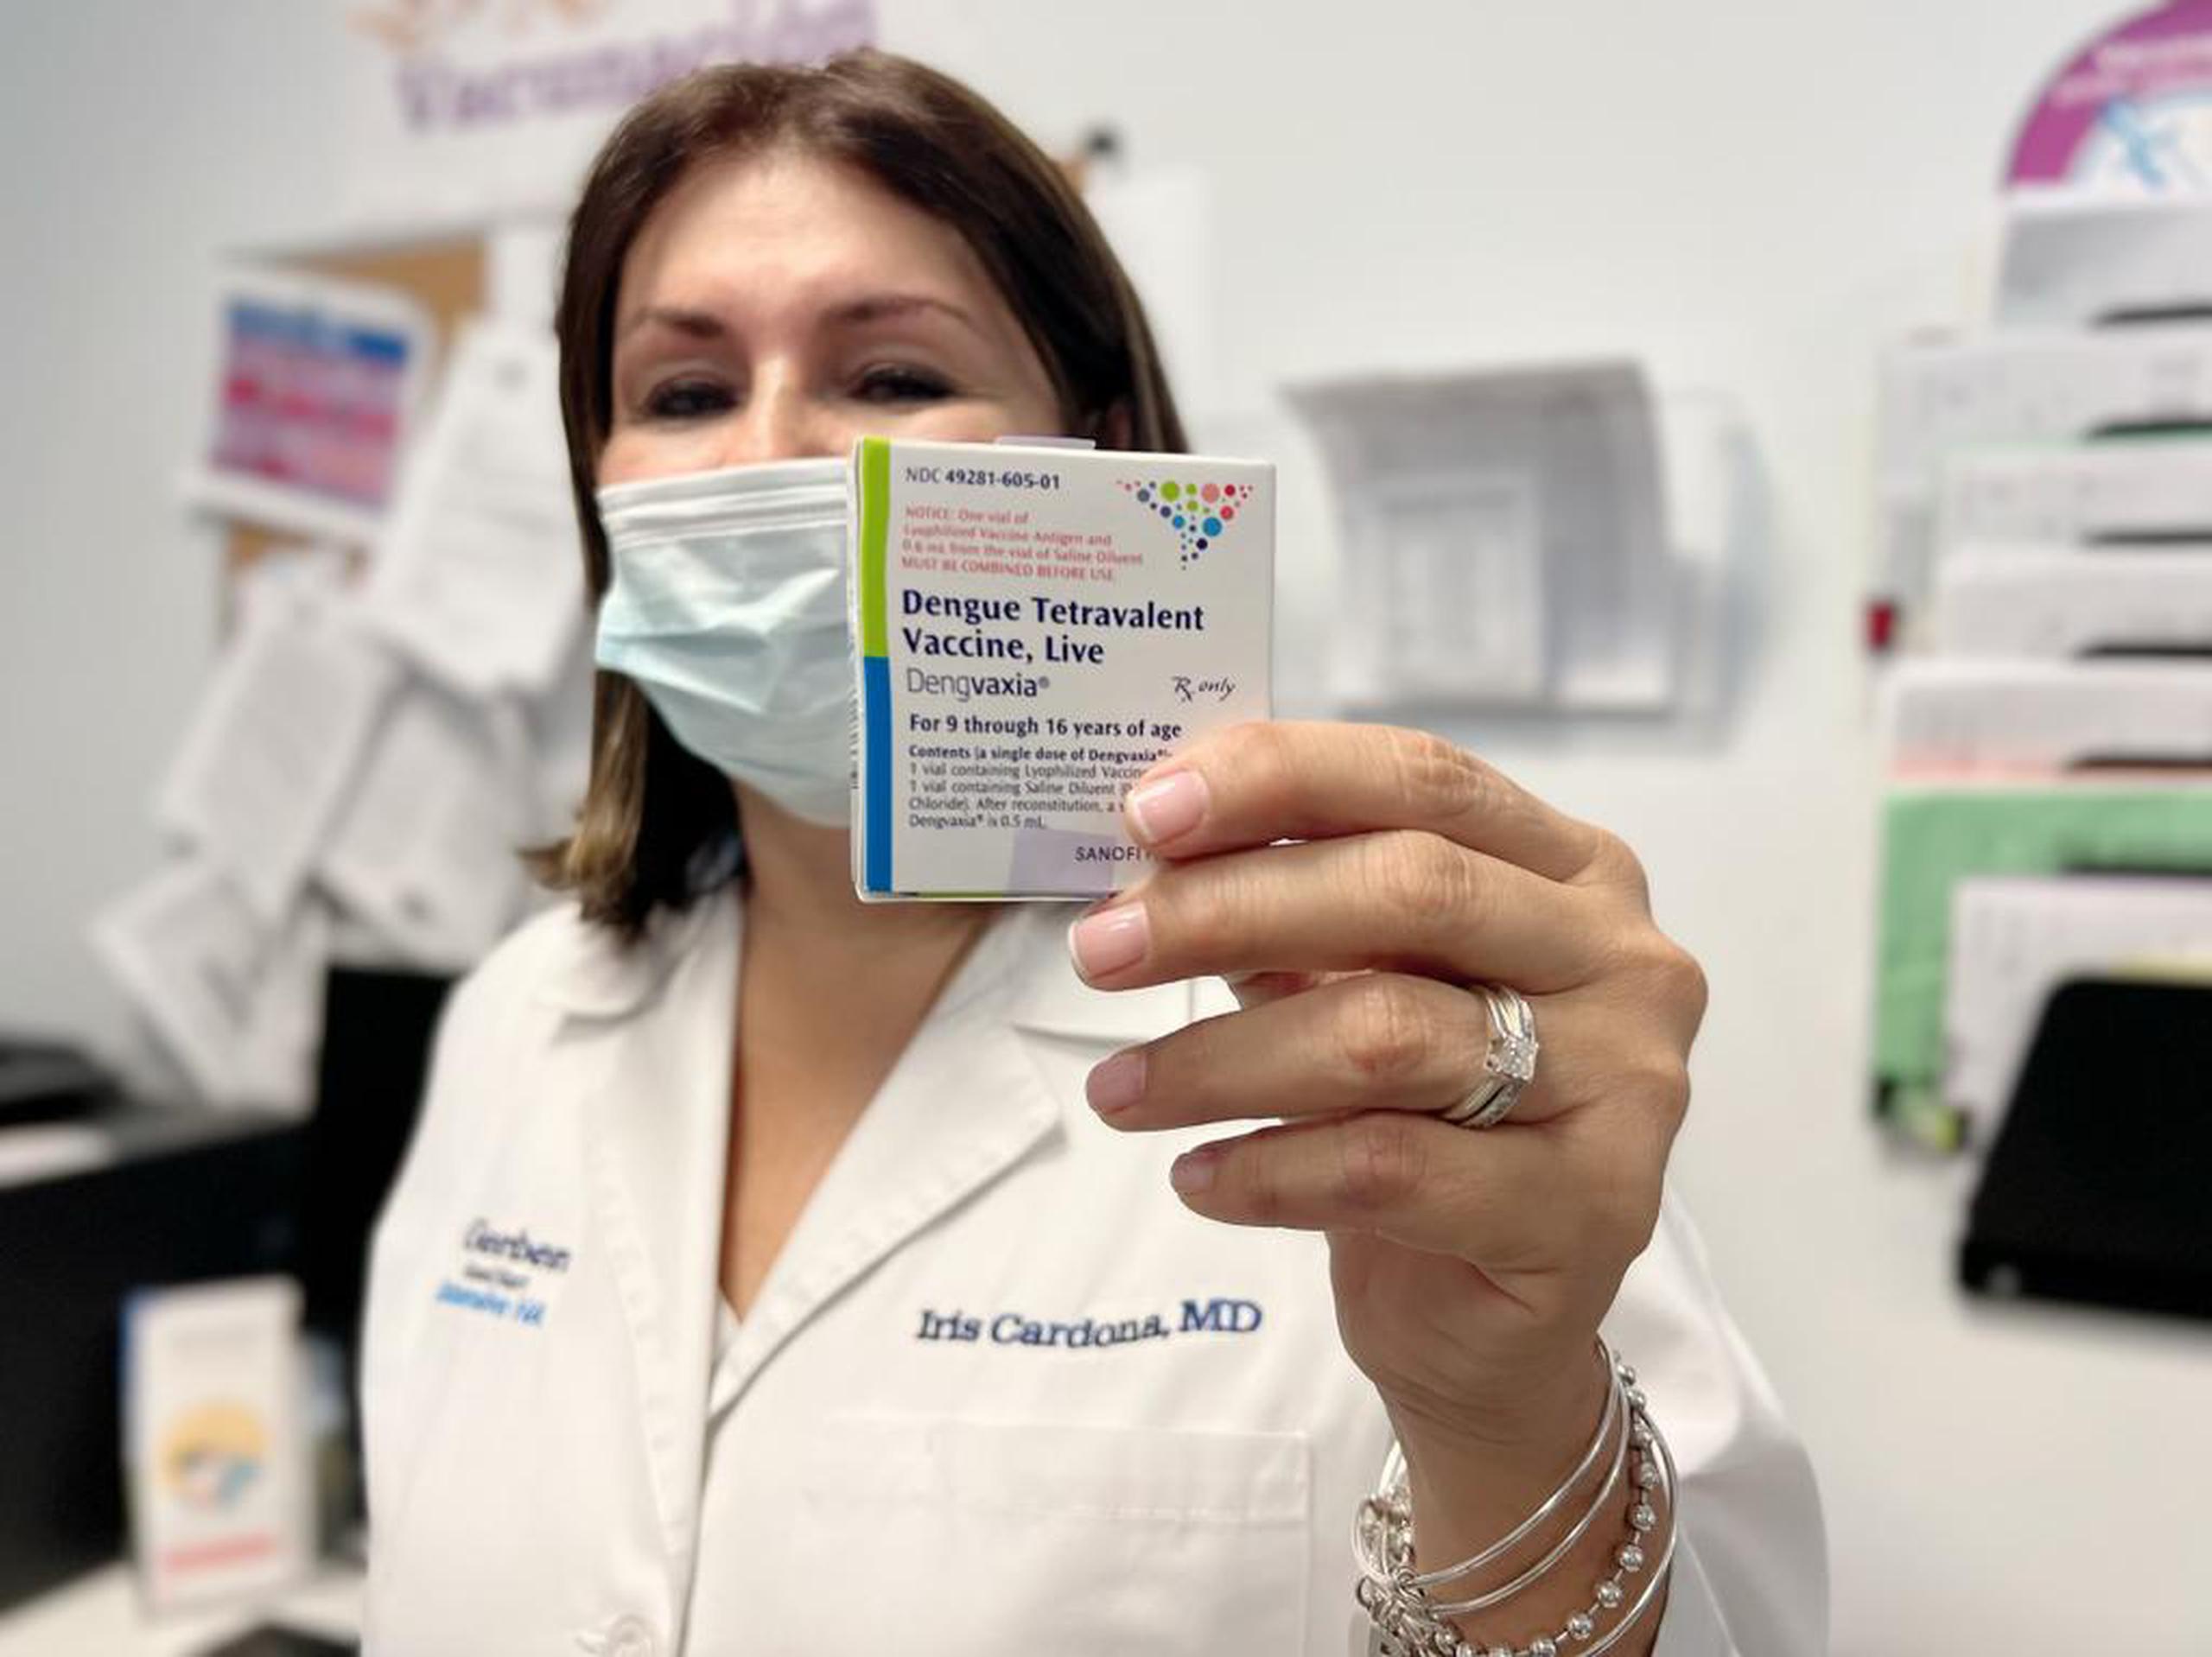 La Dra. Iris Cardona recalcó que la vacuna está exclusivamente aprobada para personas que viven en áreas donde el dengue es endémico, como el caso de Puerto Rico.